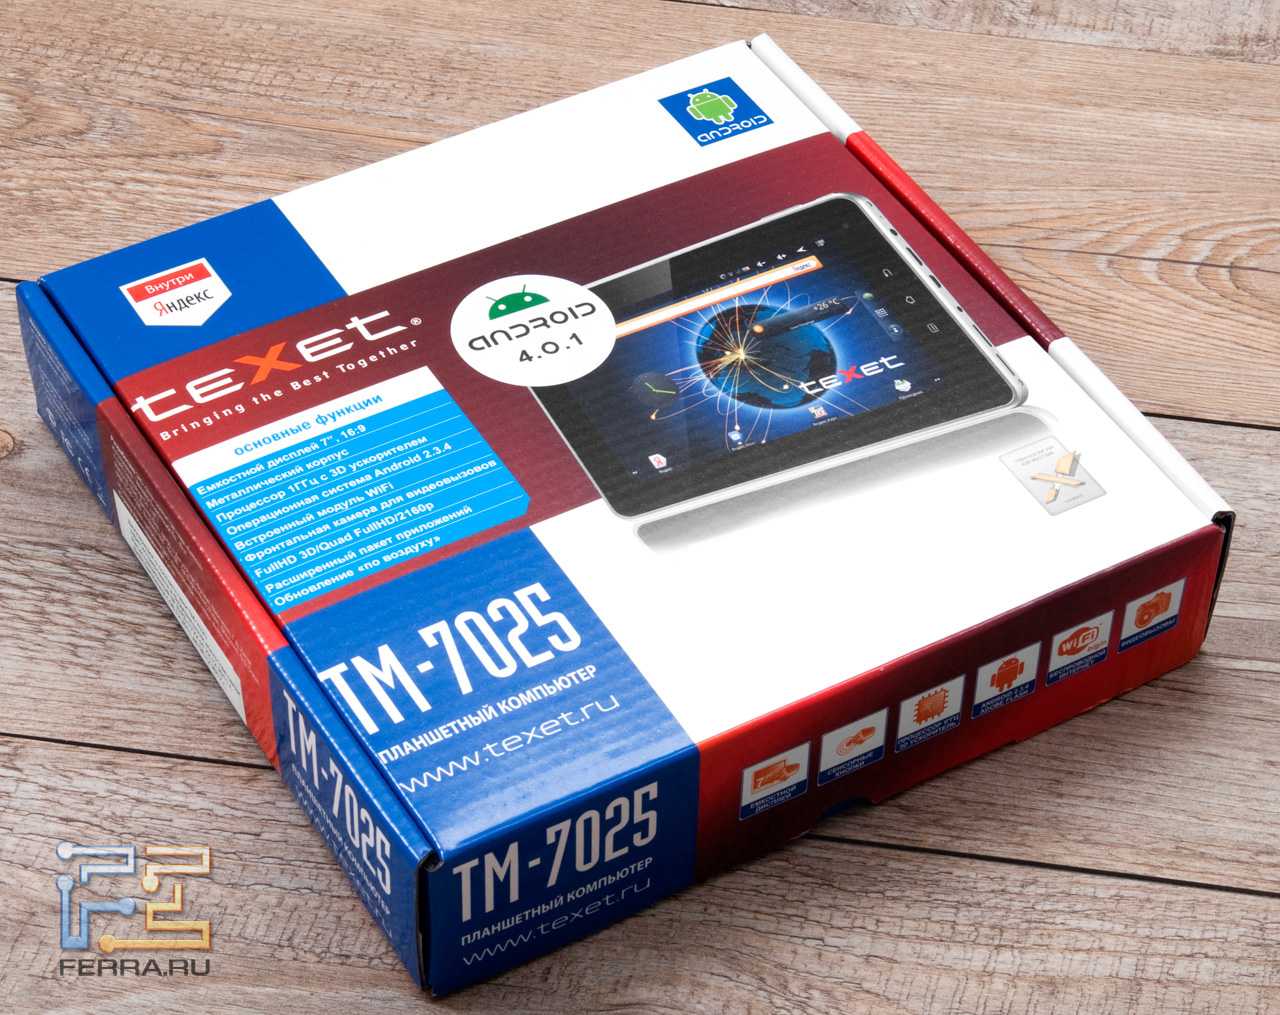 Планшет Texet TM-7025 - подробные характеристики обзоры видео фото Цены в интернет-магазинах где можно купить планшет Texet TM-7025